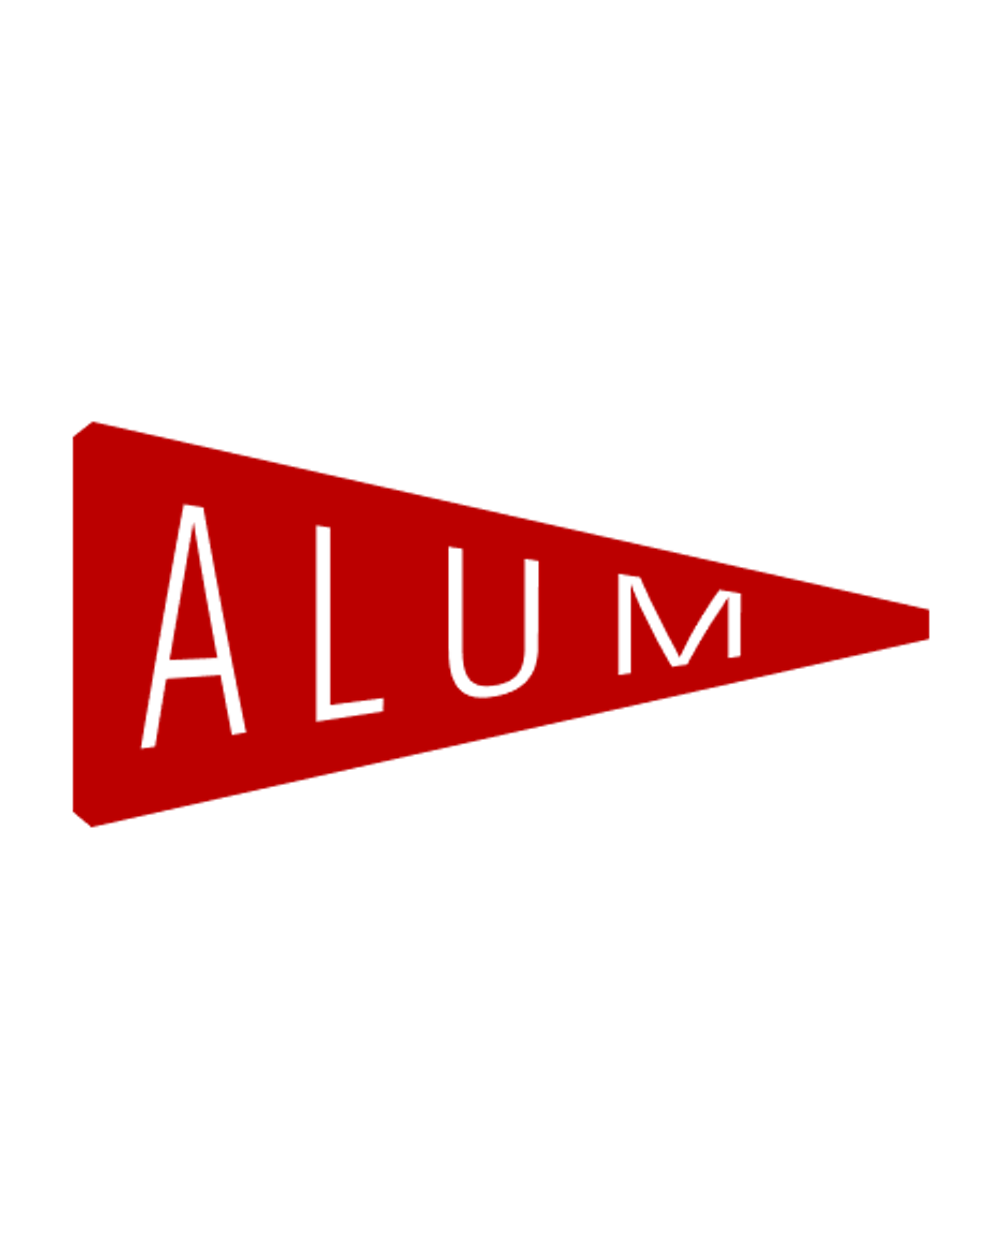 Alum Flag logo in red